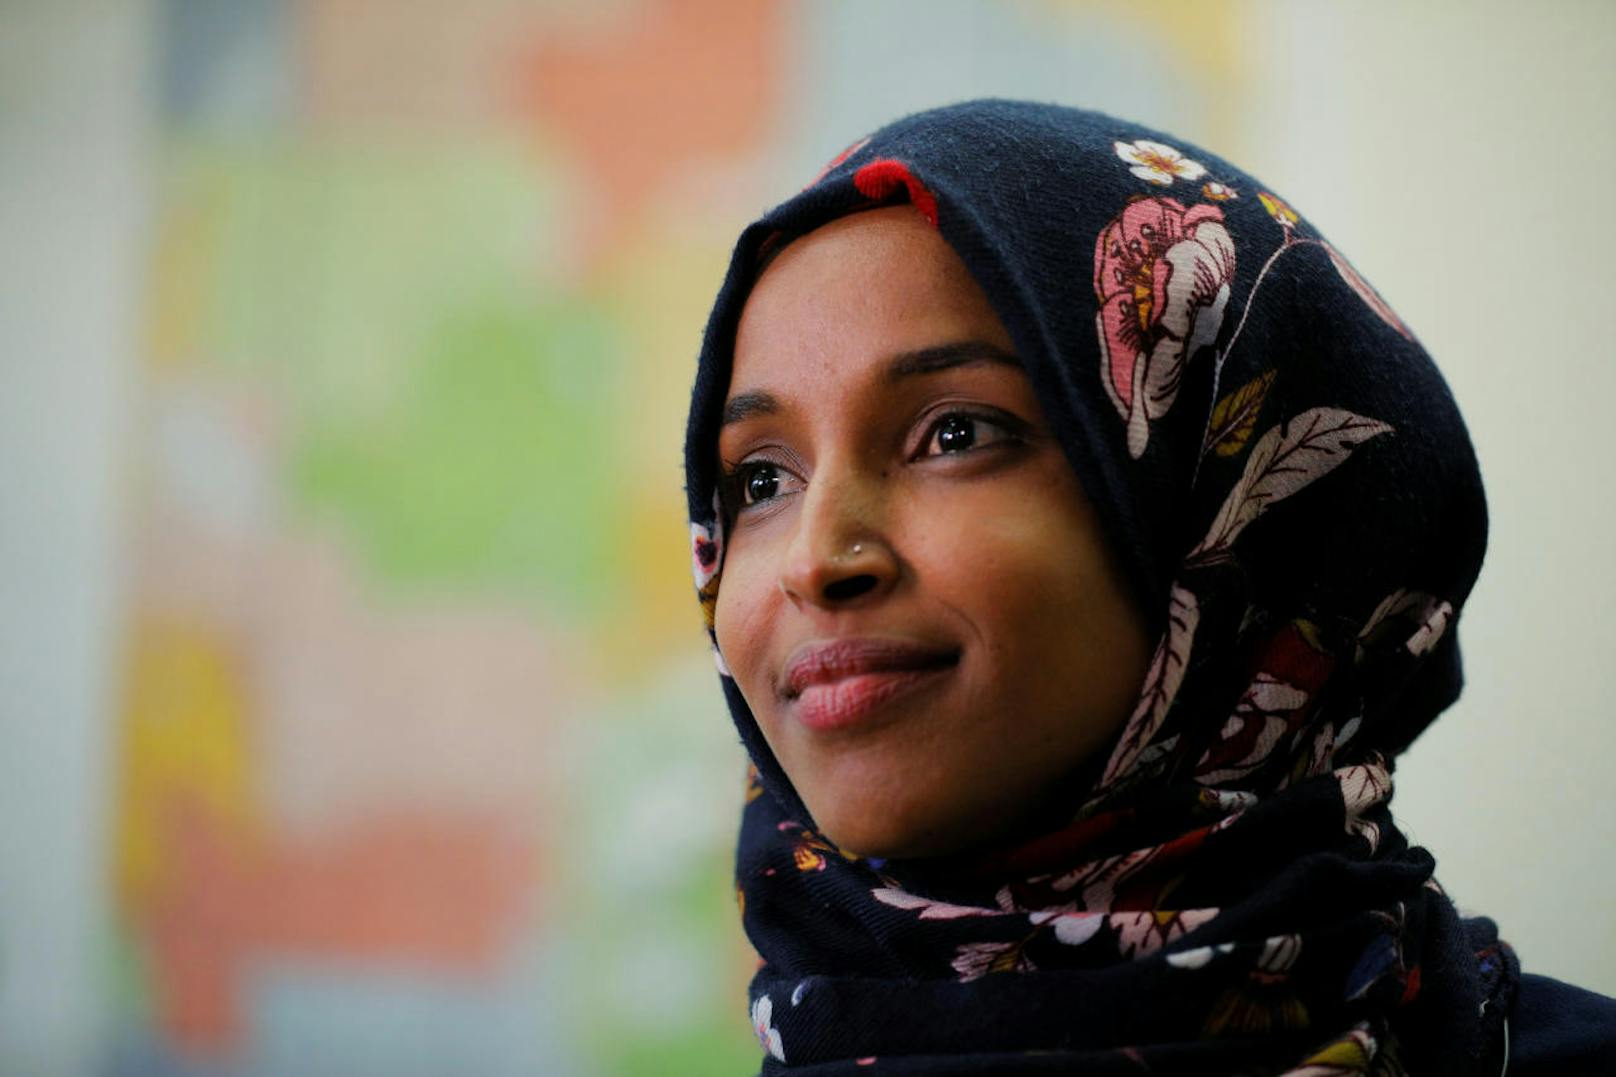 Ilhan Omar, die mit 14 Jahren aus Somalia in die USA kam, schafft den Einzug in den US-Kongress. Die Demokratin ist zusammen mit Rashida Tlaib die erste muslimische Frau im US-Kongress.